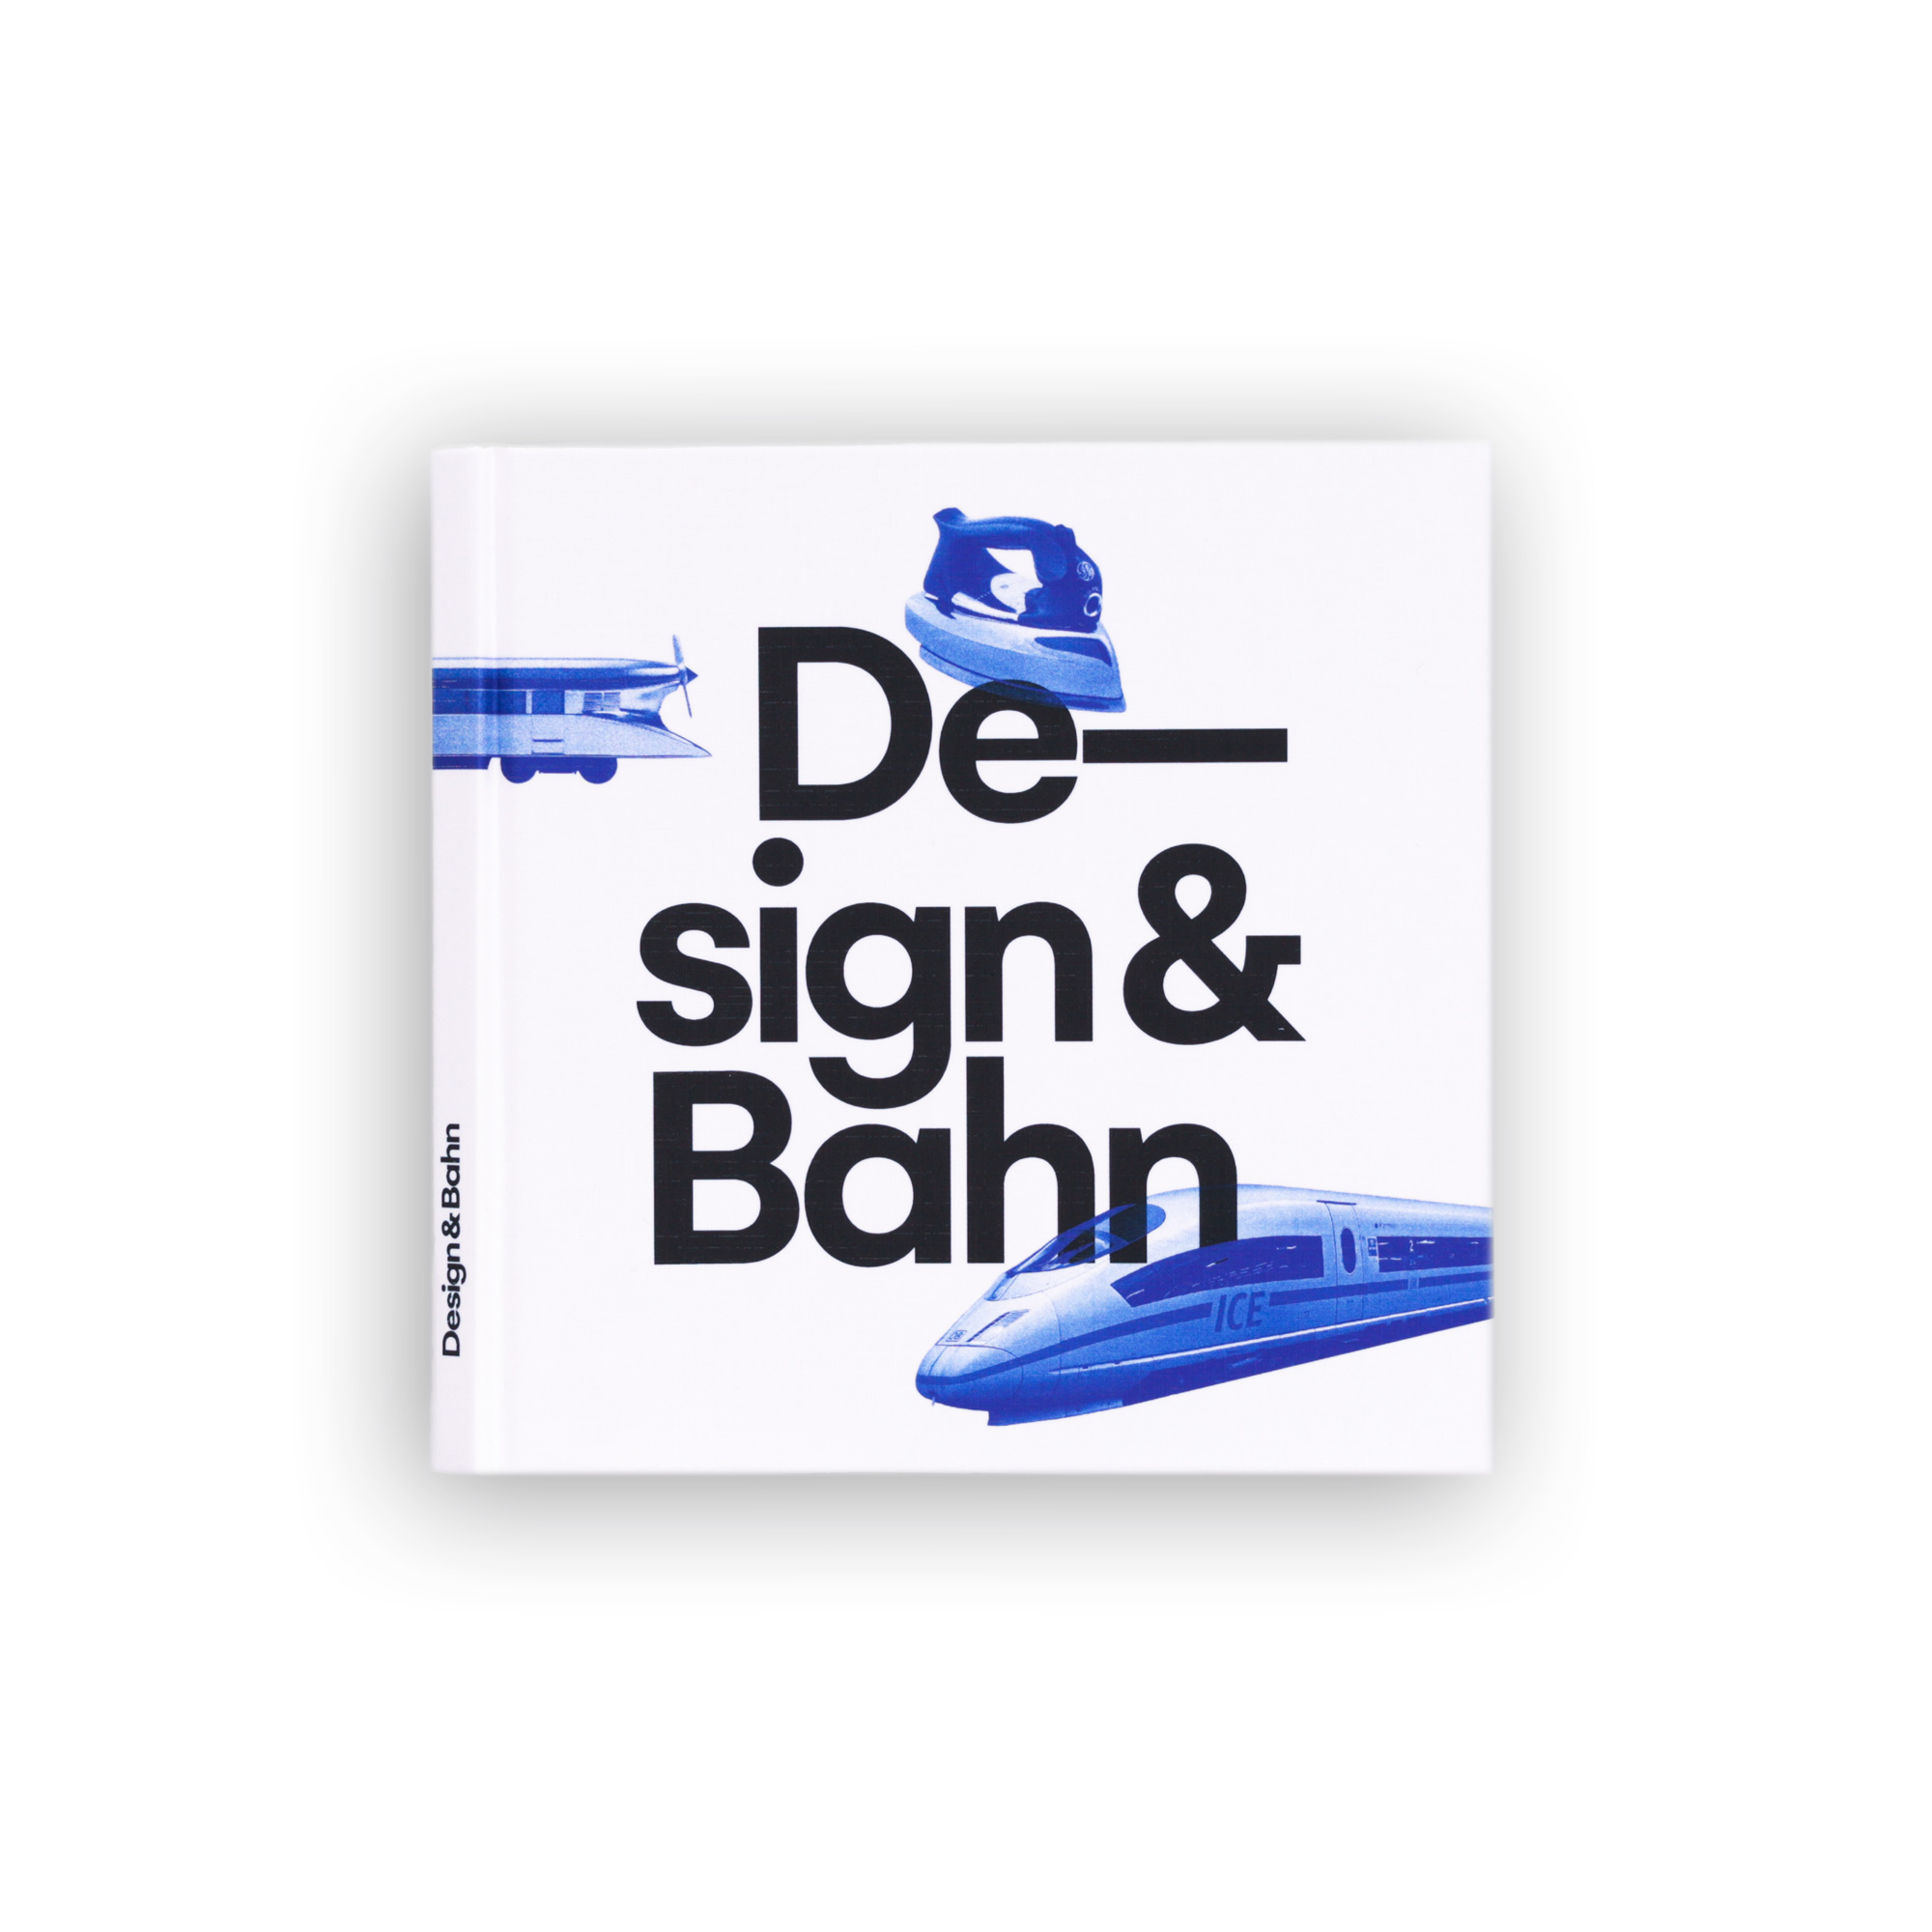 Notizbuch: Design & Bahn